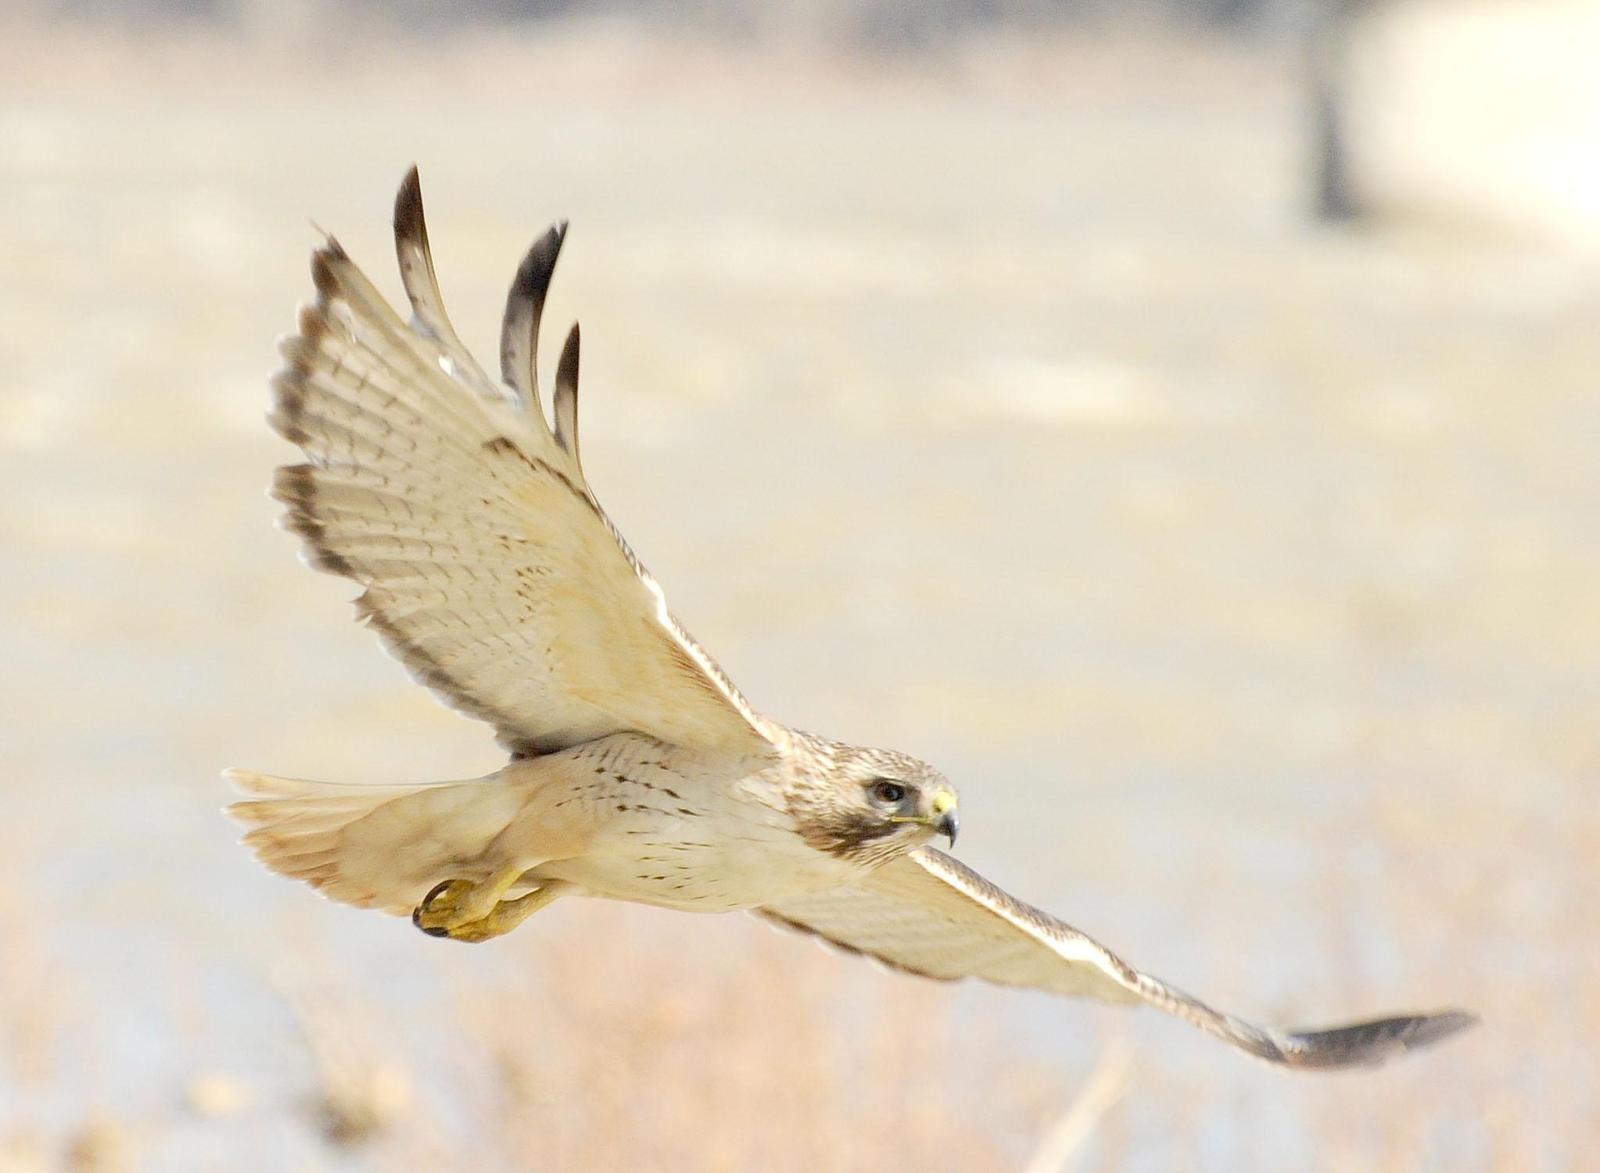 Red-tailed Hawk Photo by Mark Rozmarynowycz